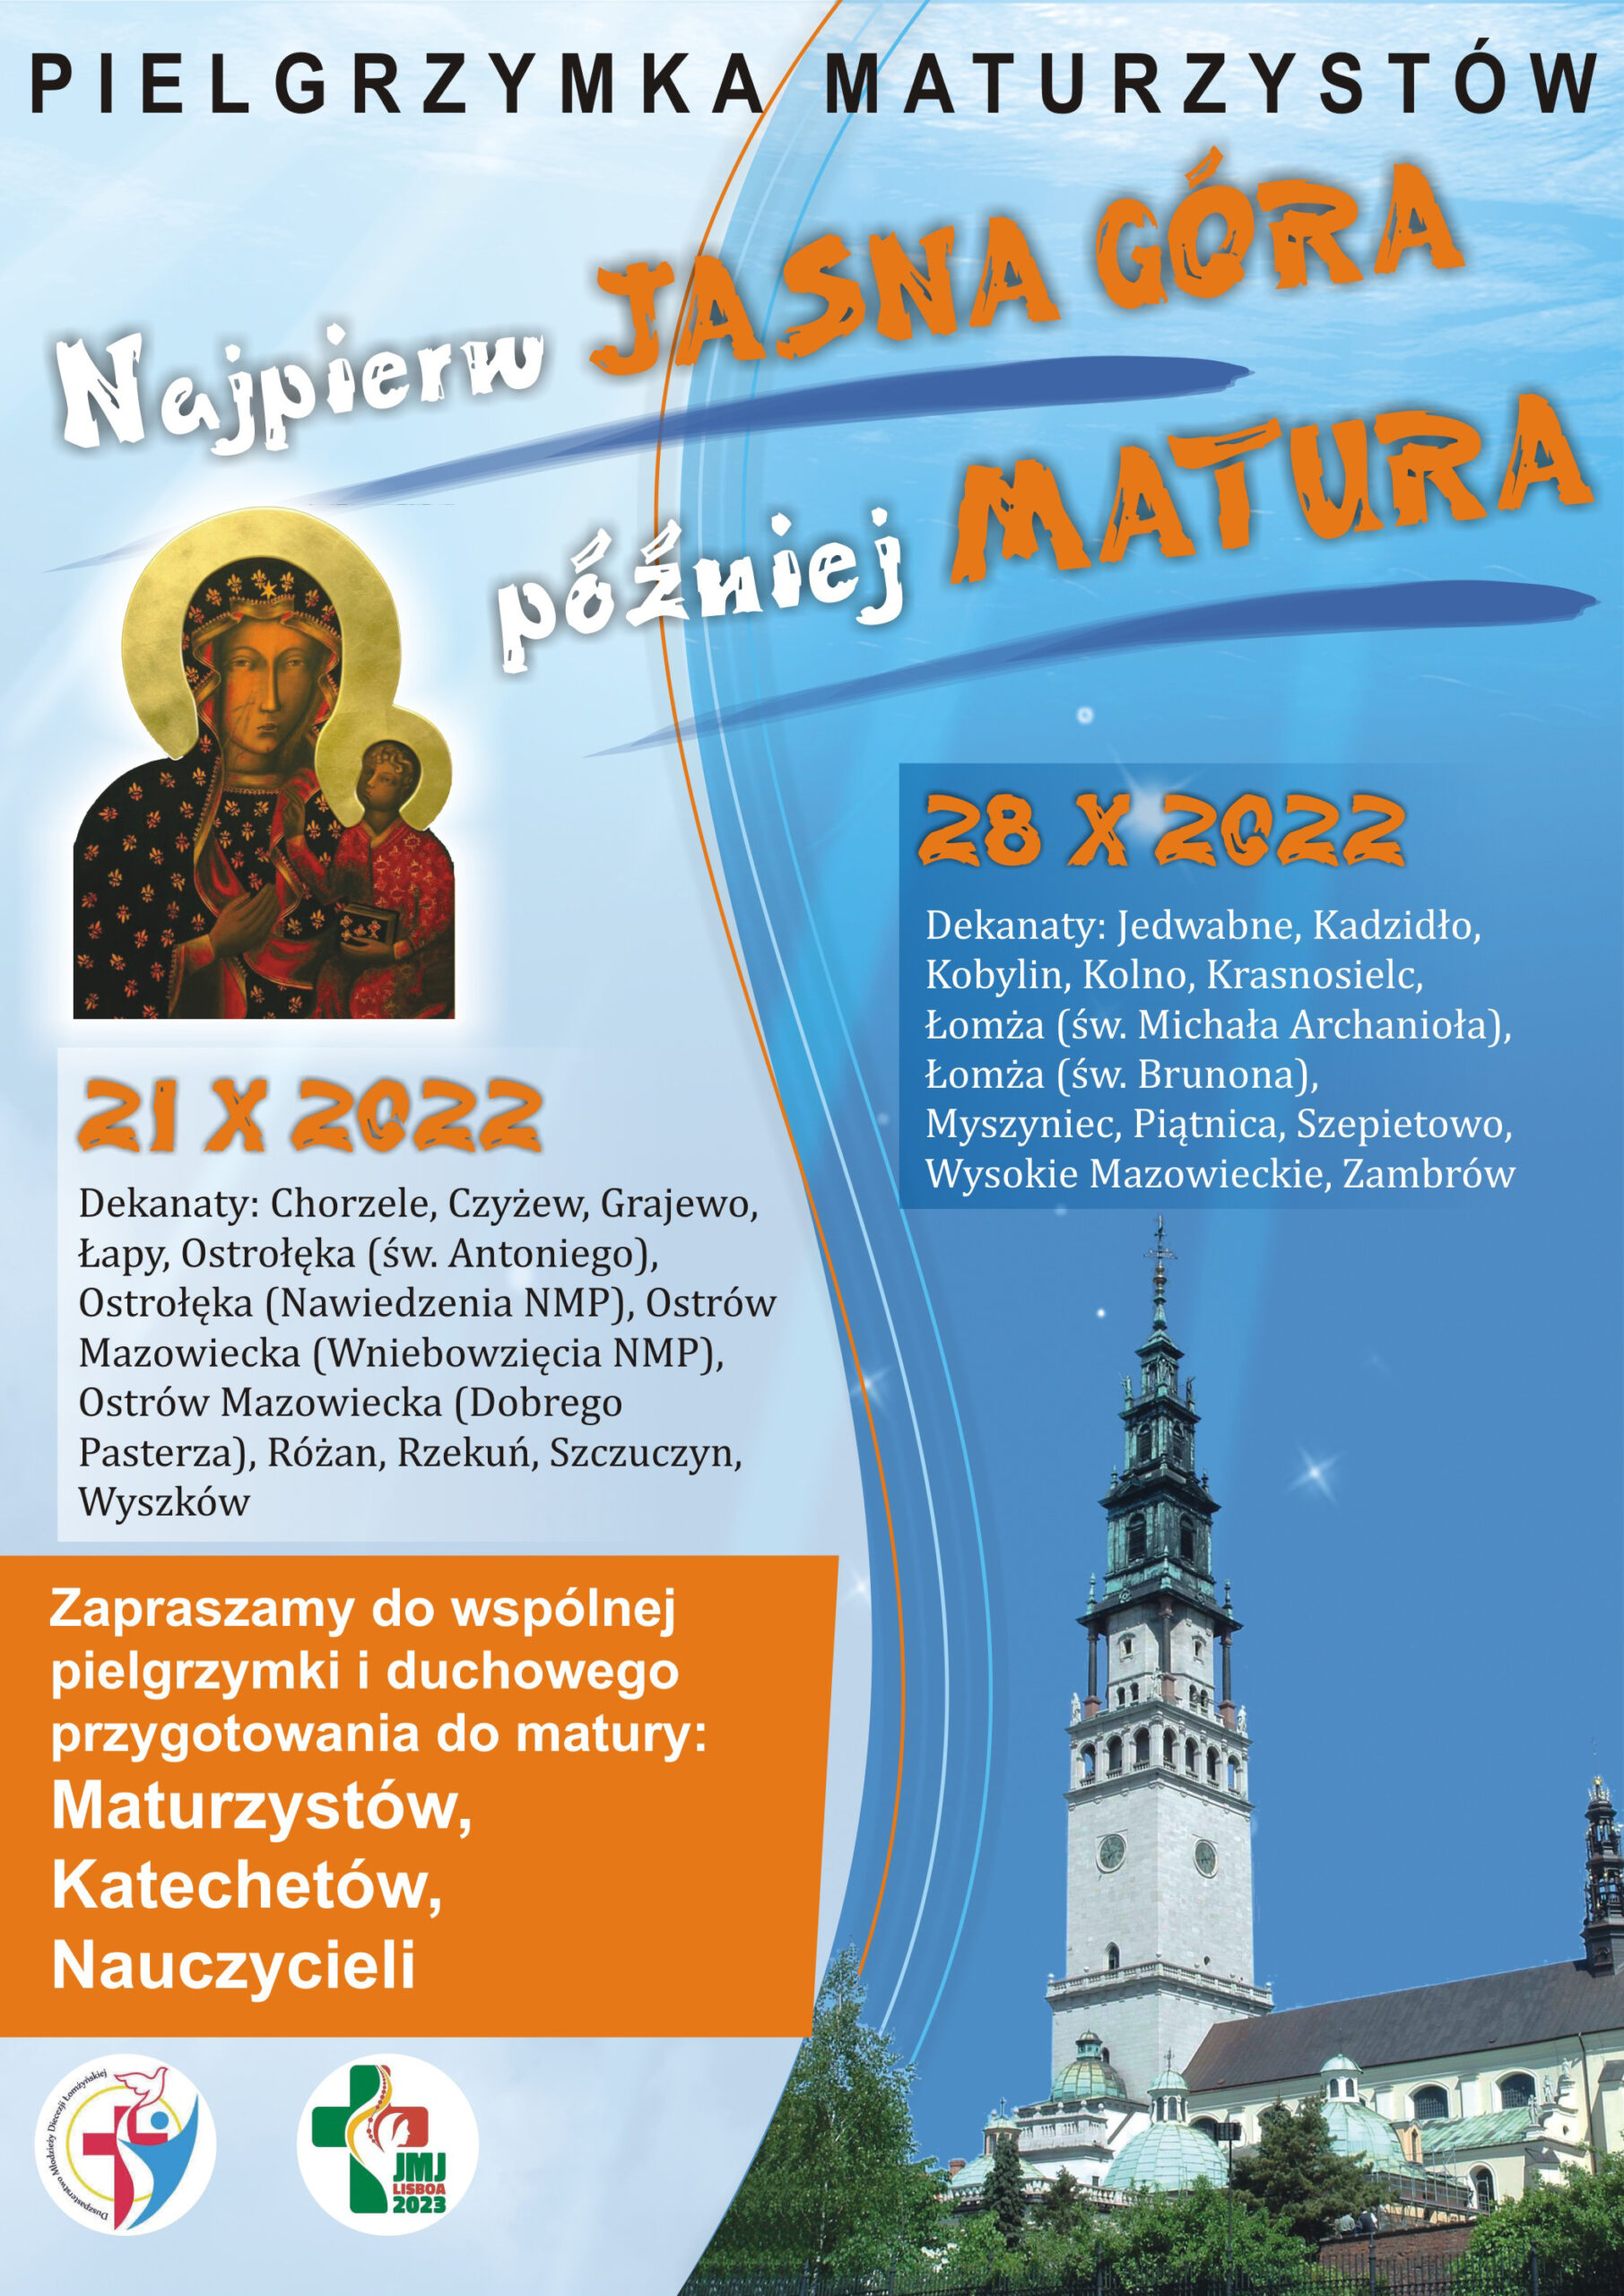 http://katecheza.lomza.pl/wp-content/uploads/2022/09/pielgrzymka-maturzystow-2022-1-scaled.jpg